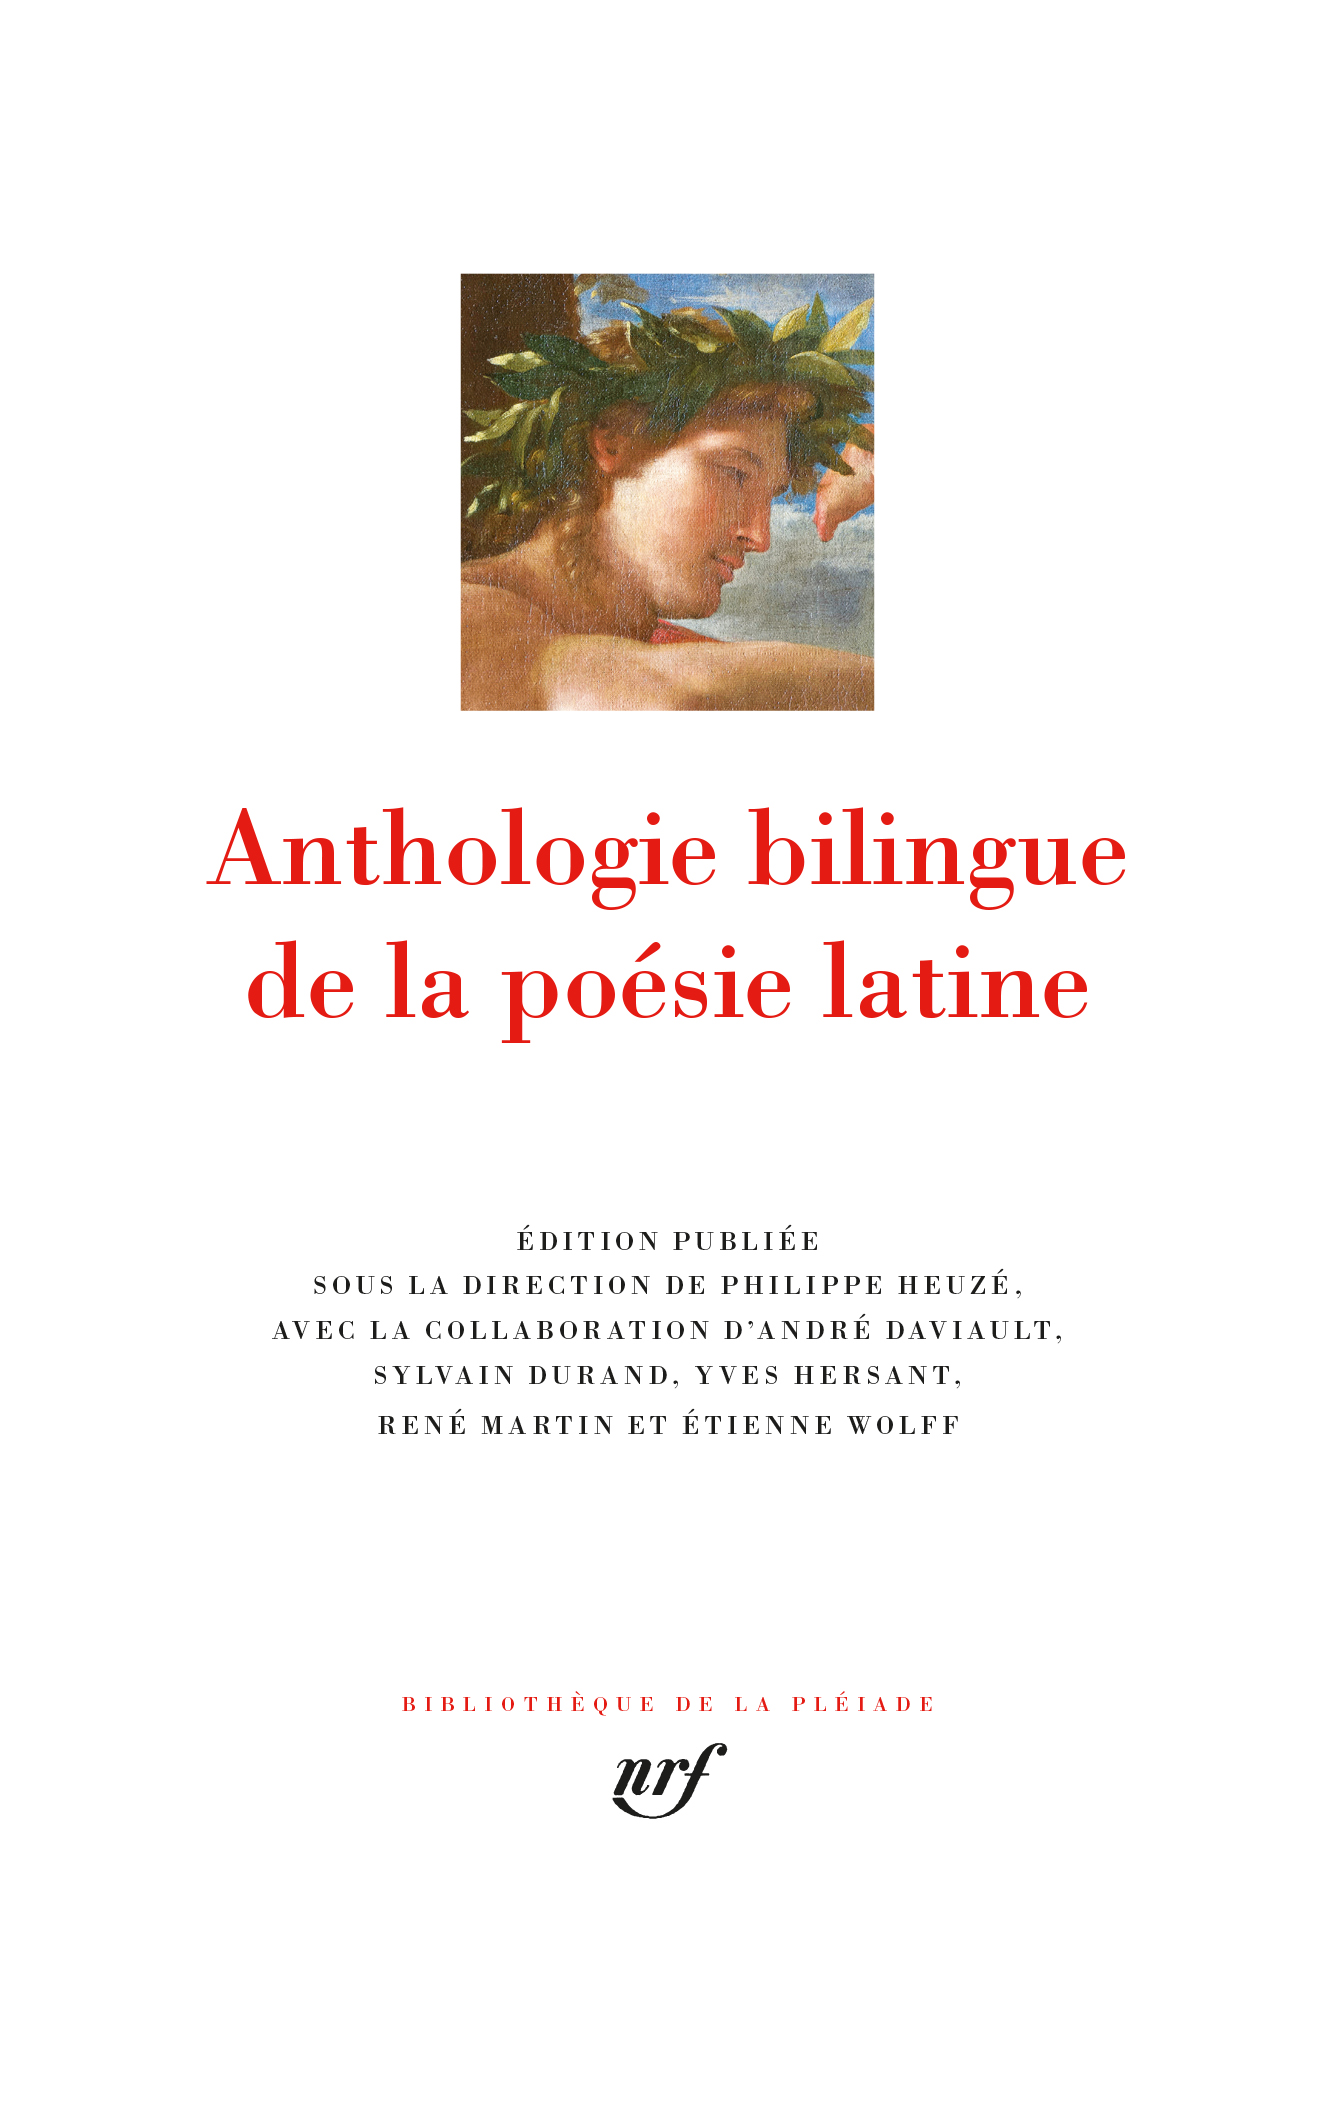 Les poèmes latins de Baudelaire et de Rimbaud. Conf. de Ph. Heuzé (Paris, Lycée Henri IV)